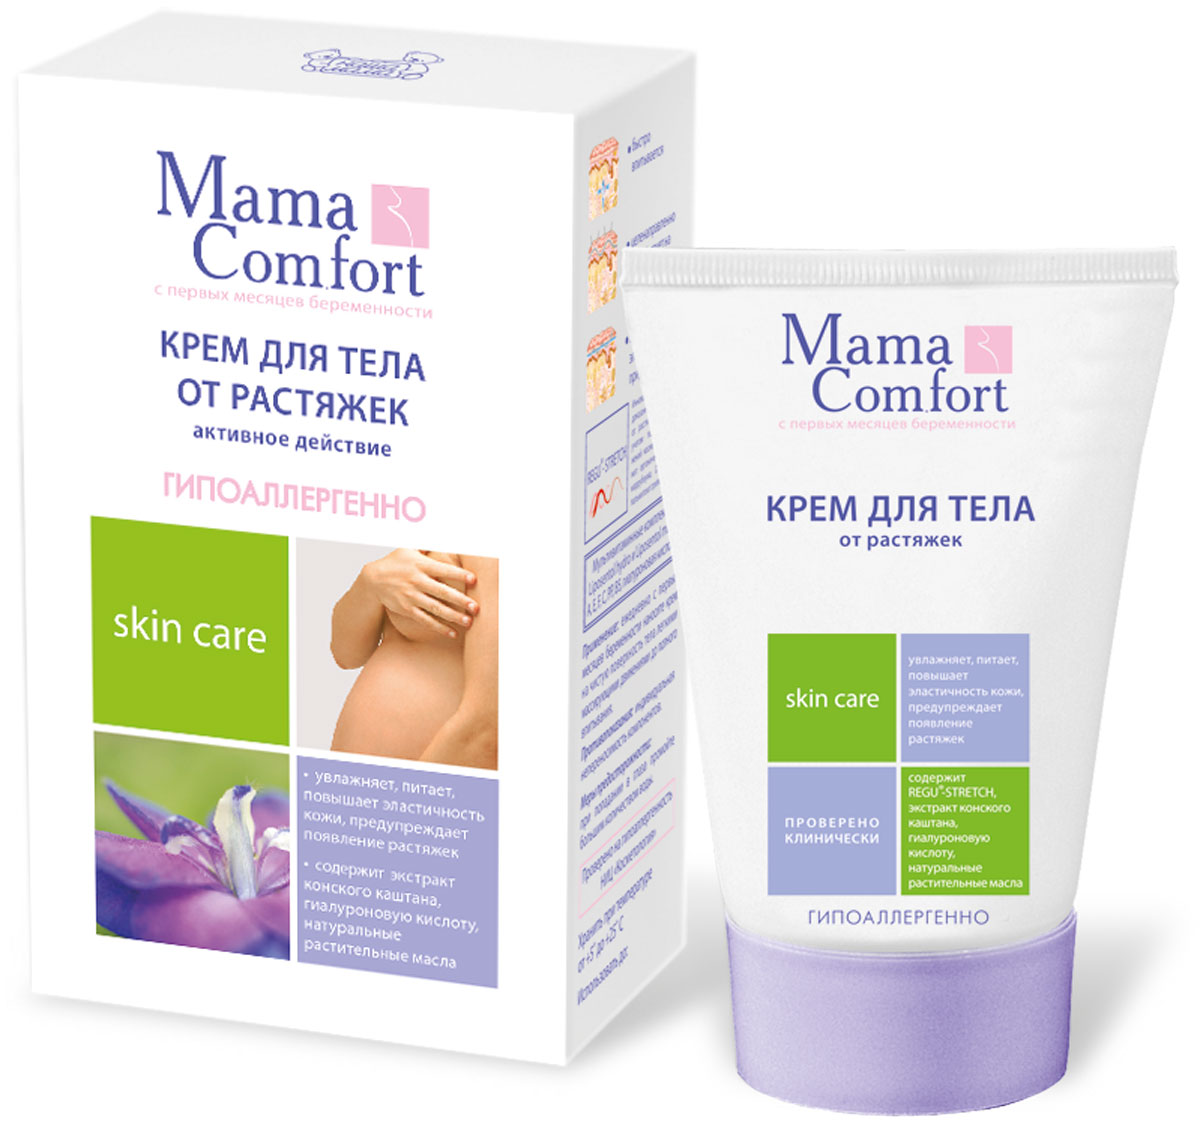 купить Mama Comfort Крем для тела от растяжек, 100 мл - заказ и доставка в Москве и Санкт-Петербурге